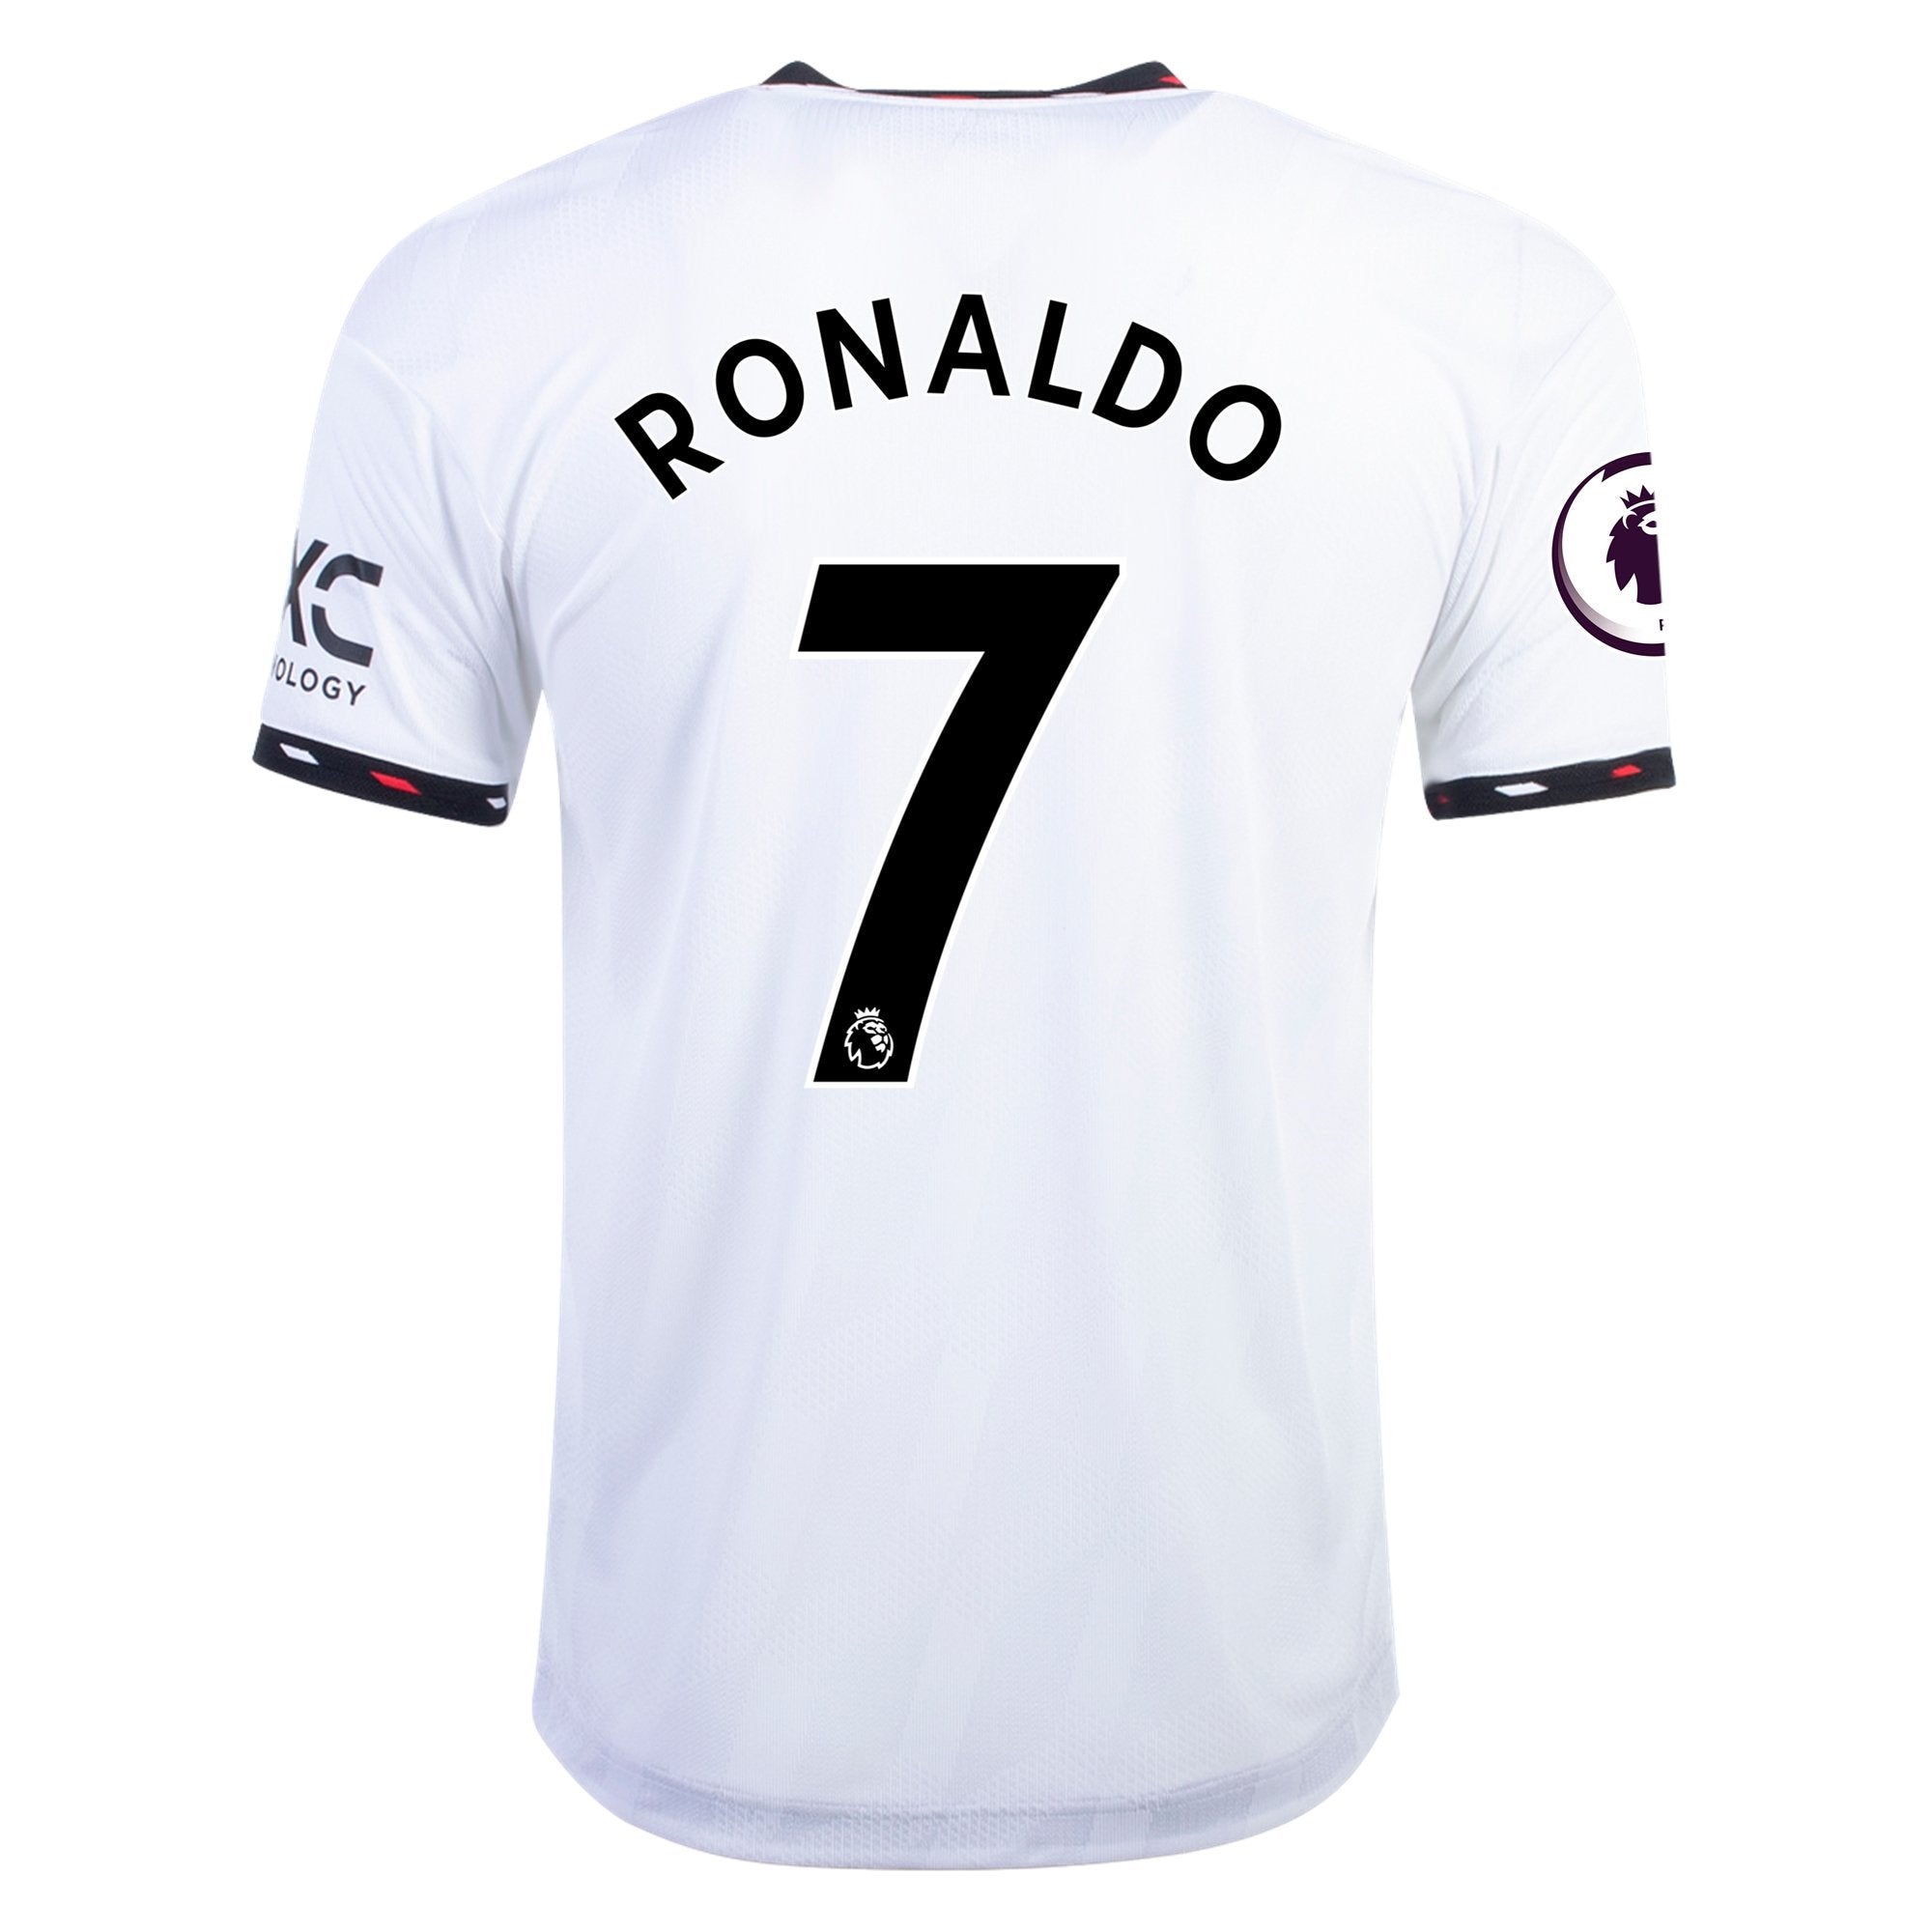 ronaldo authentic jersey